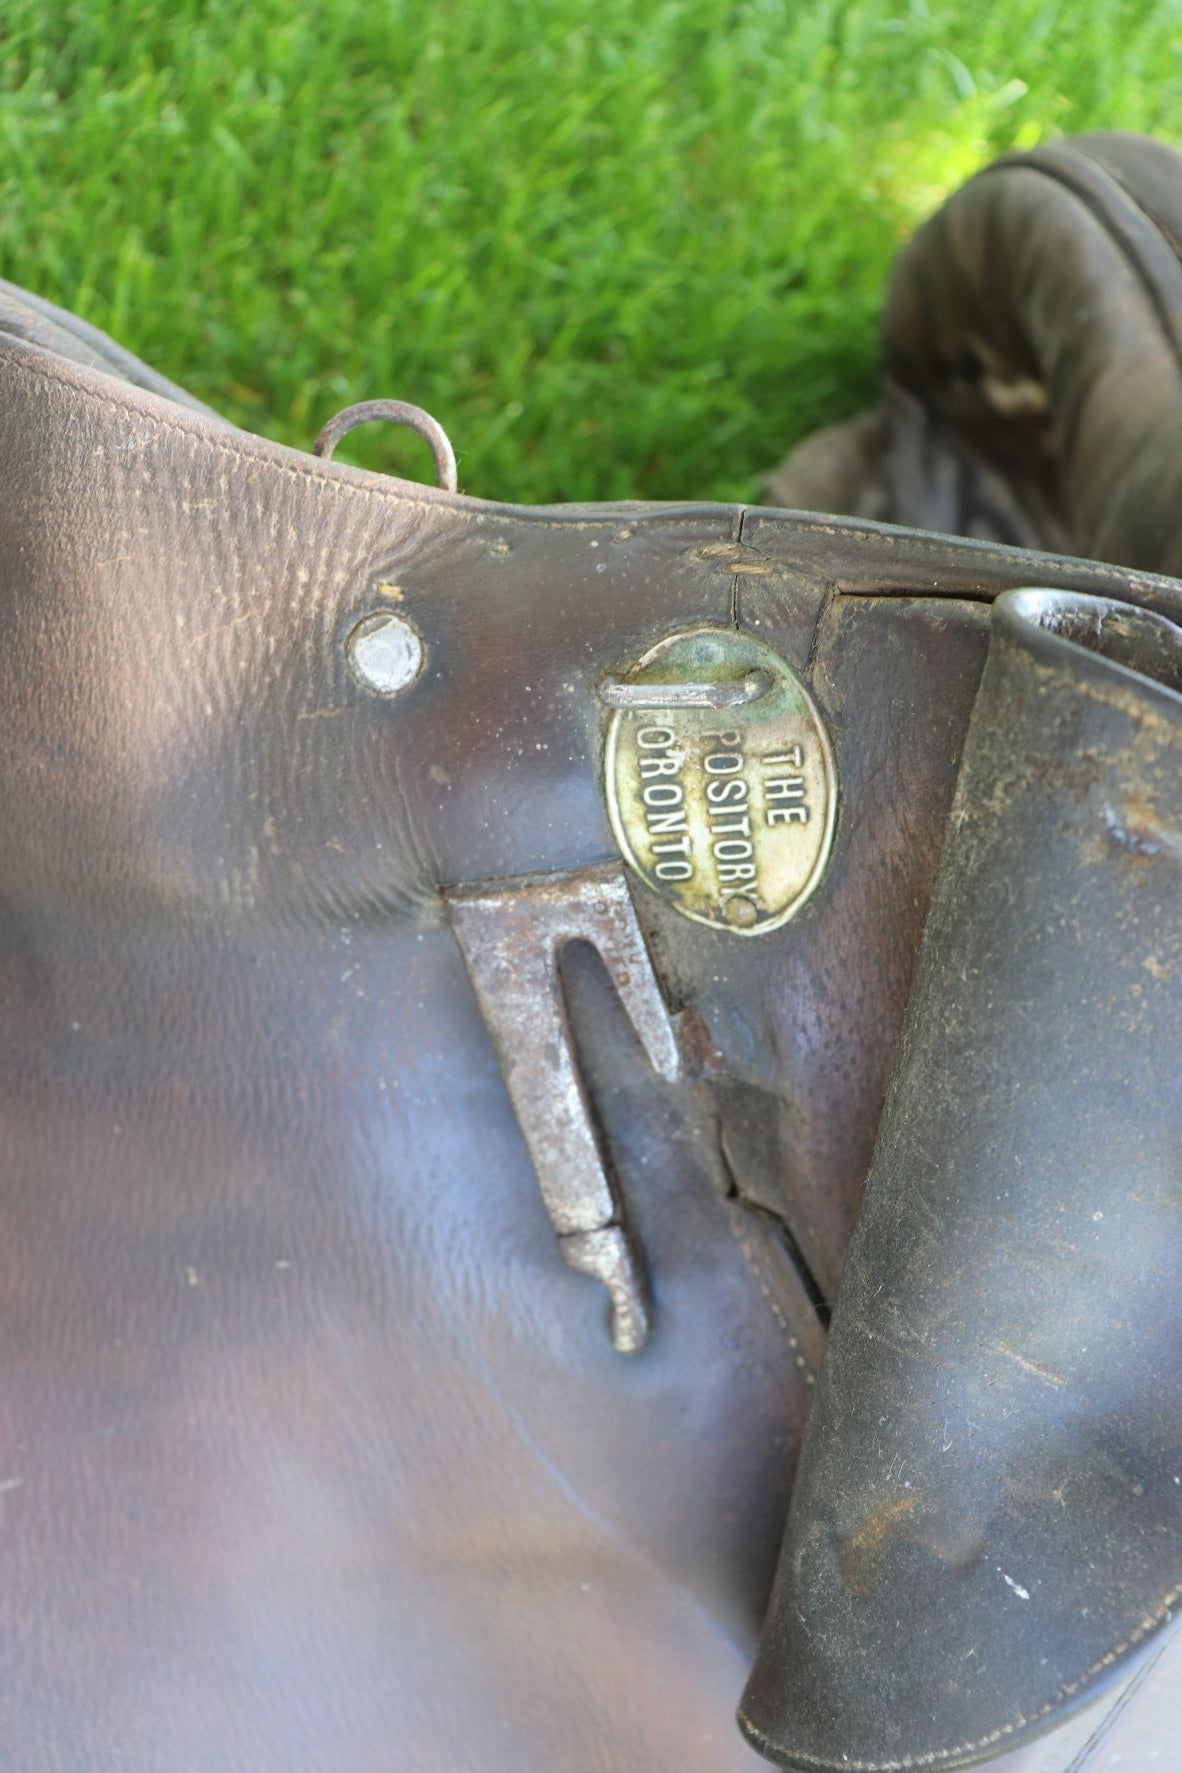 Vintage Leather Saddle - English Style